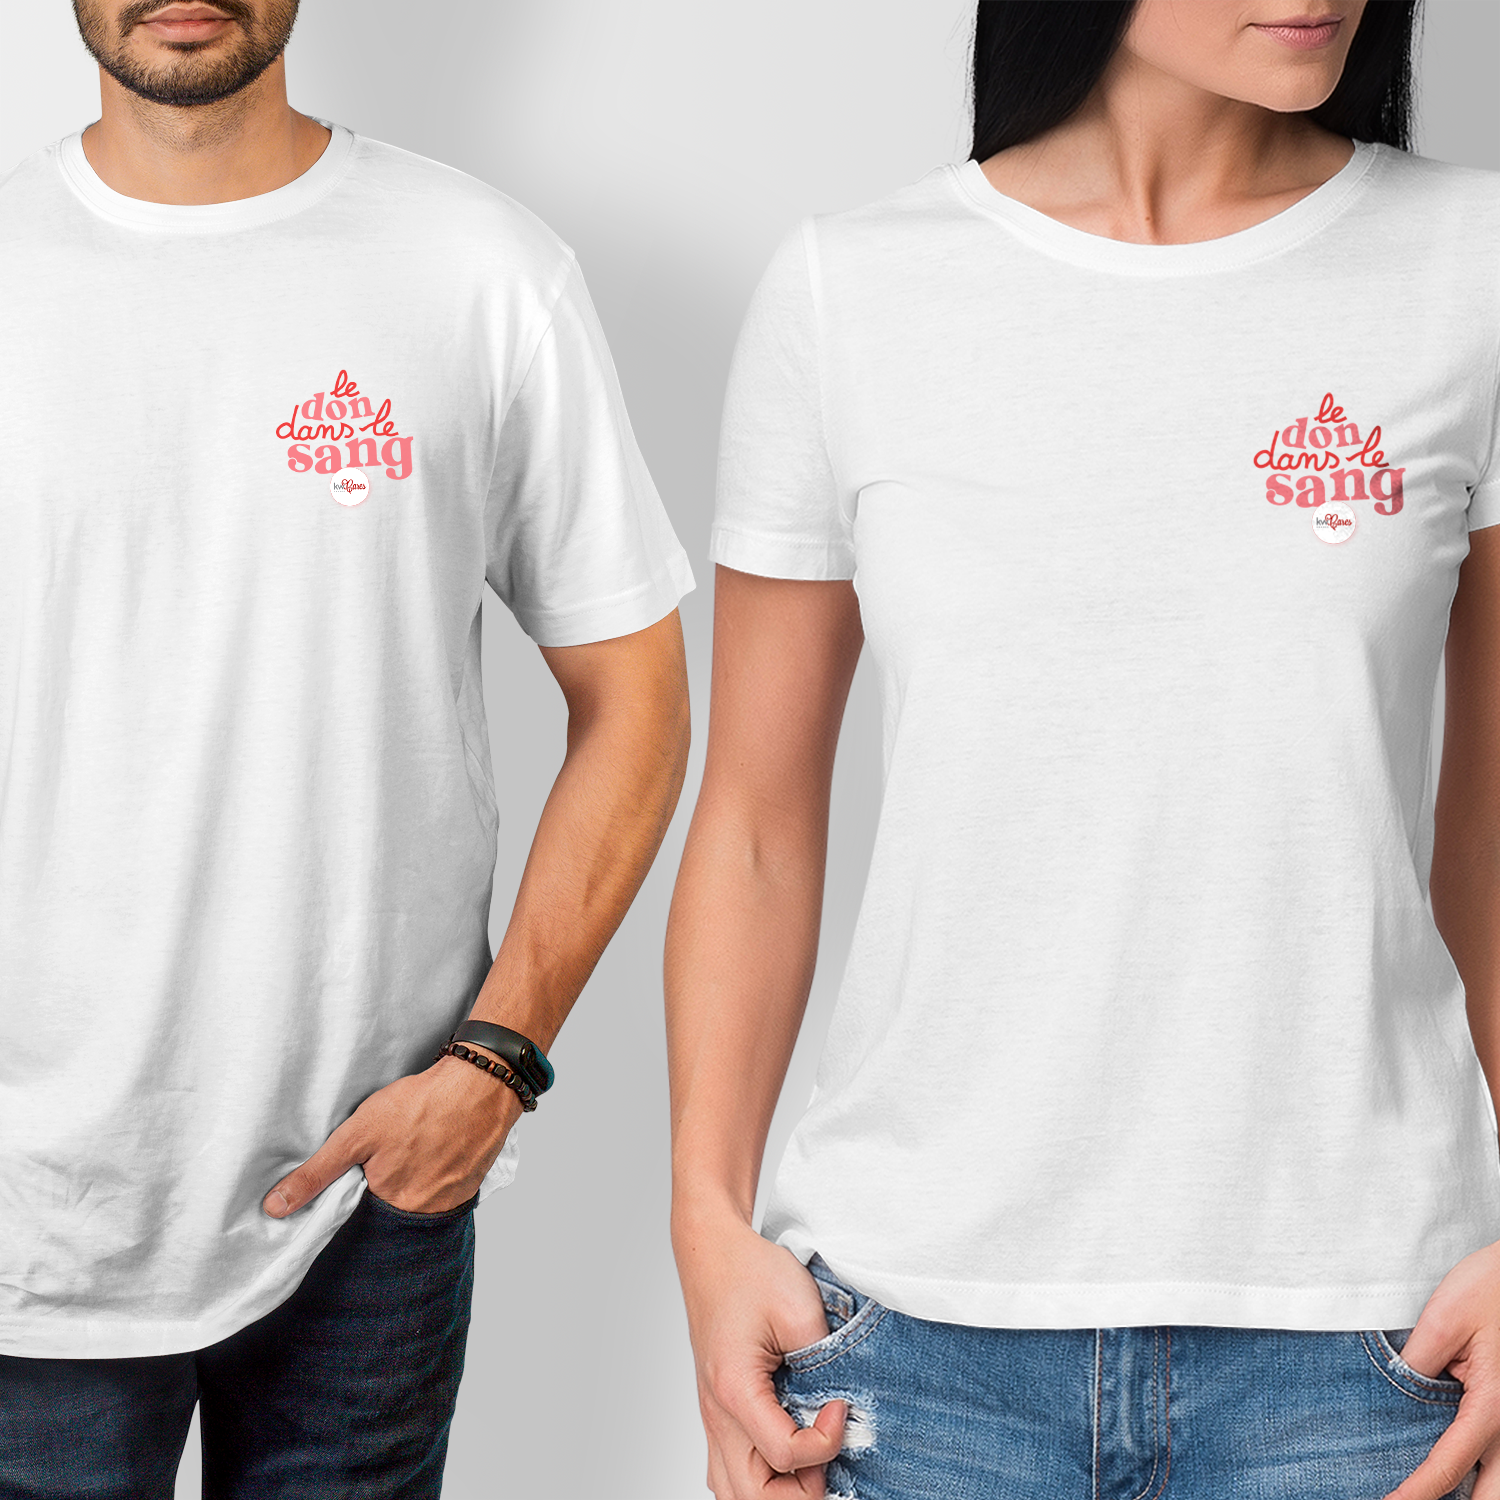 T-Shirt Premium Unisexe - KW France Cares - Le Don dans le Sang